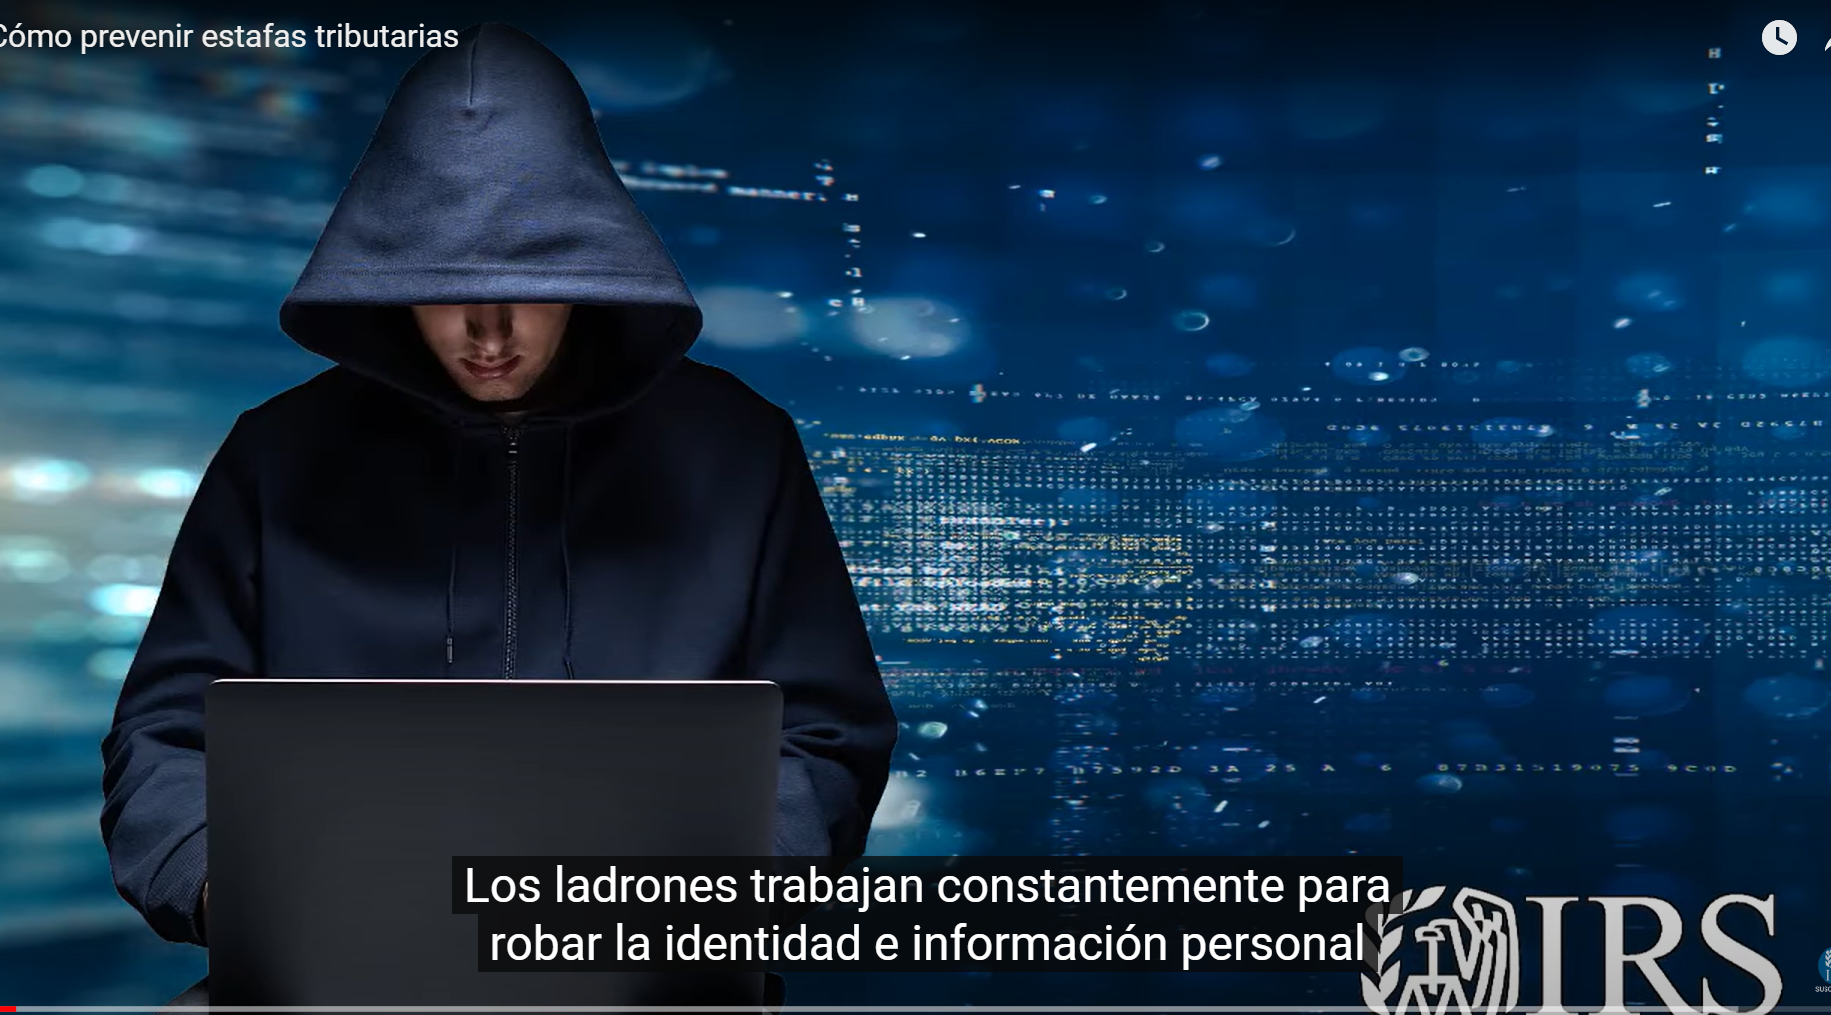 Los ladrones trabajan constantemente para robar la identidad e información personal